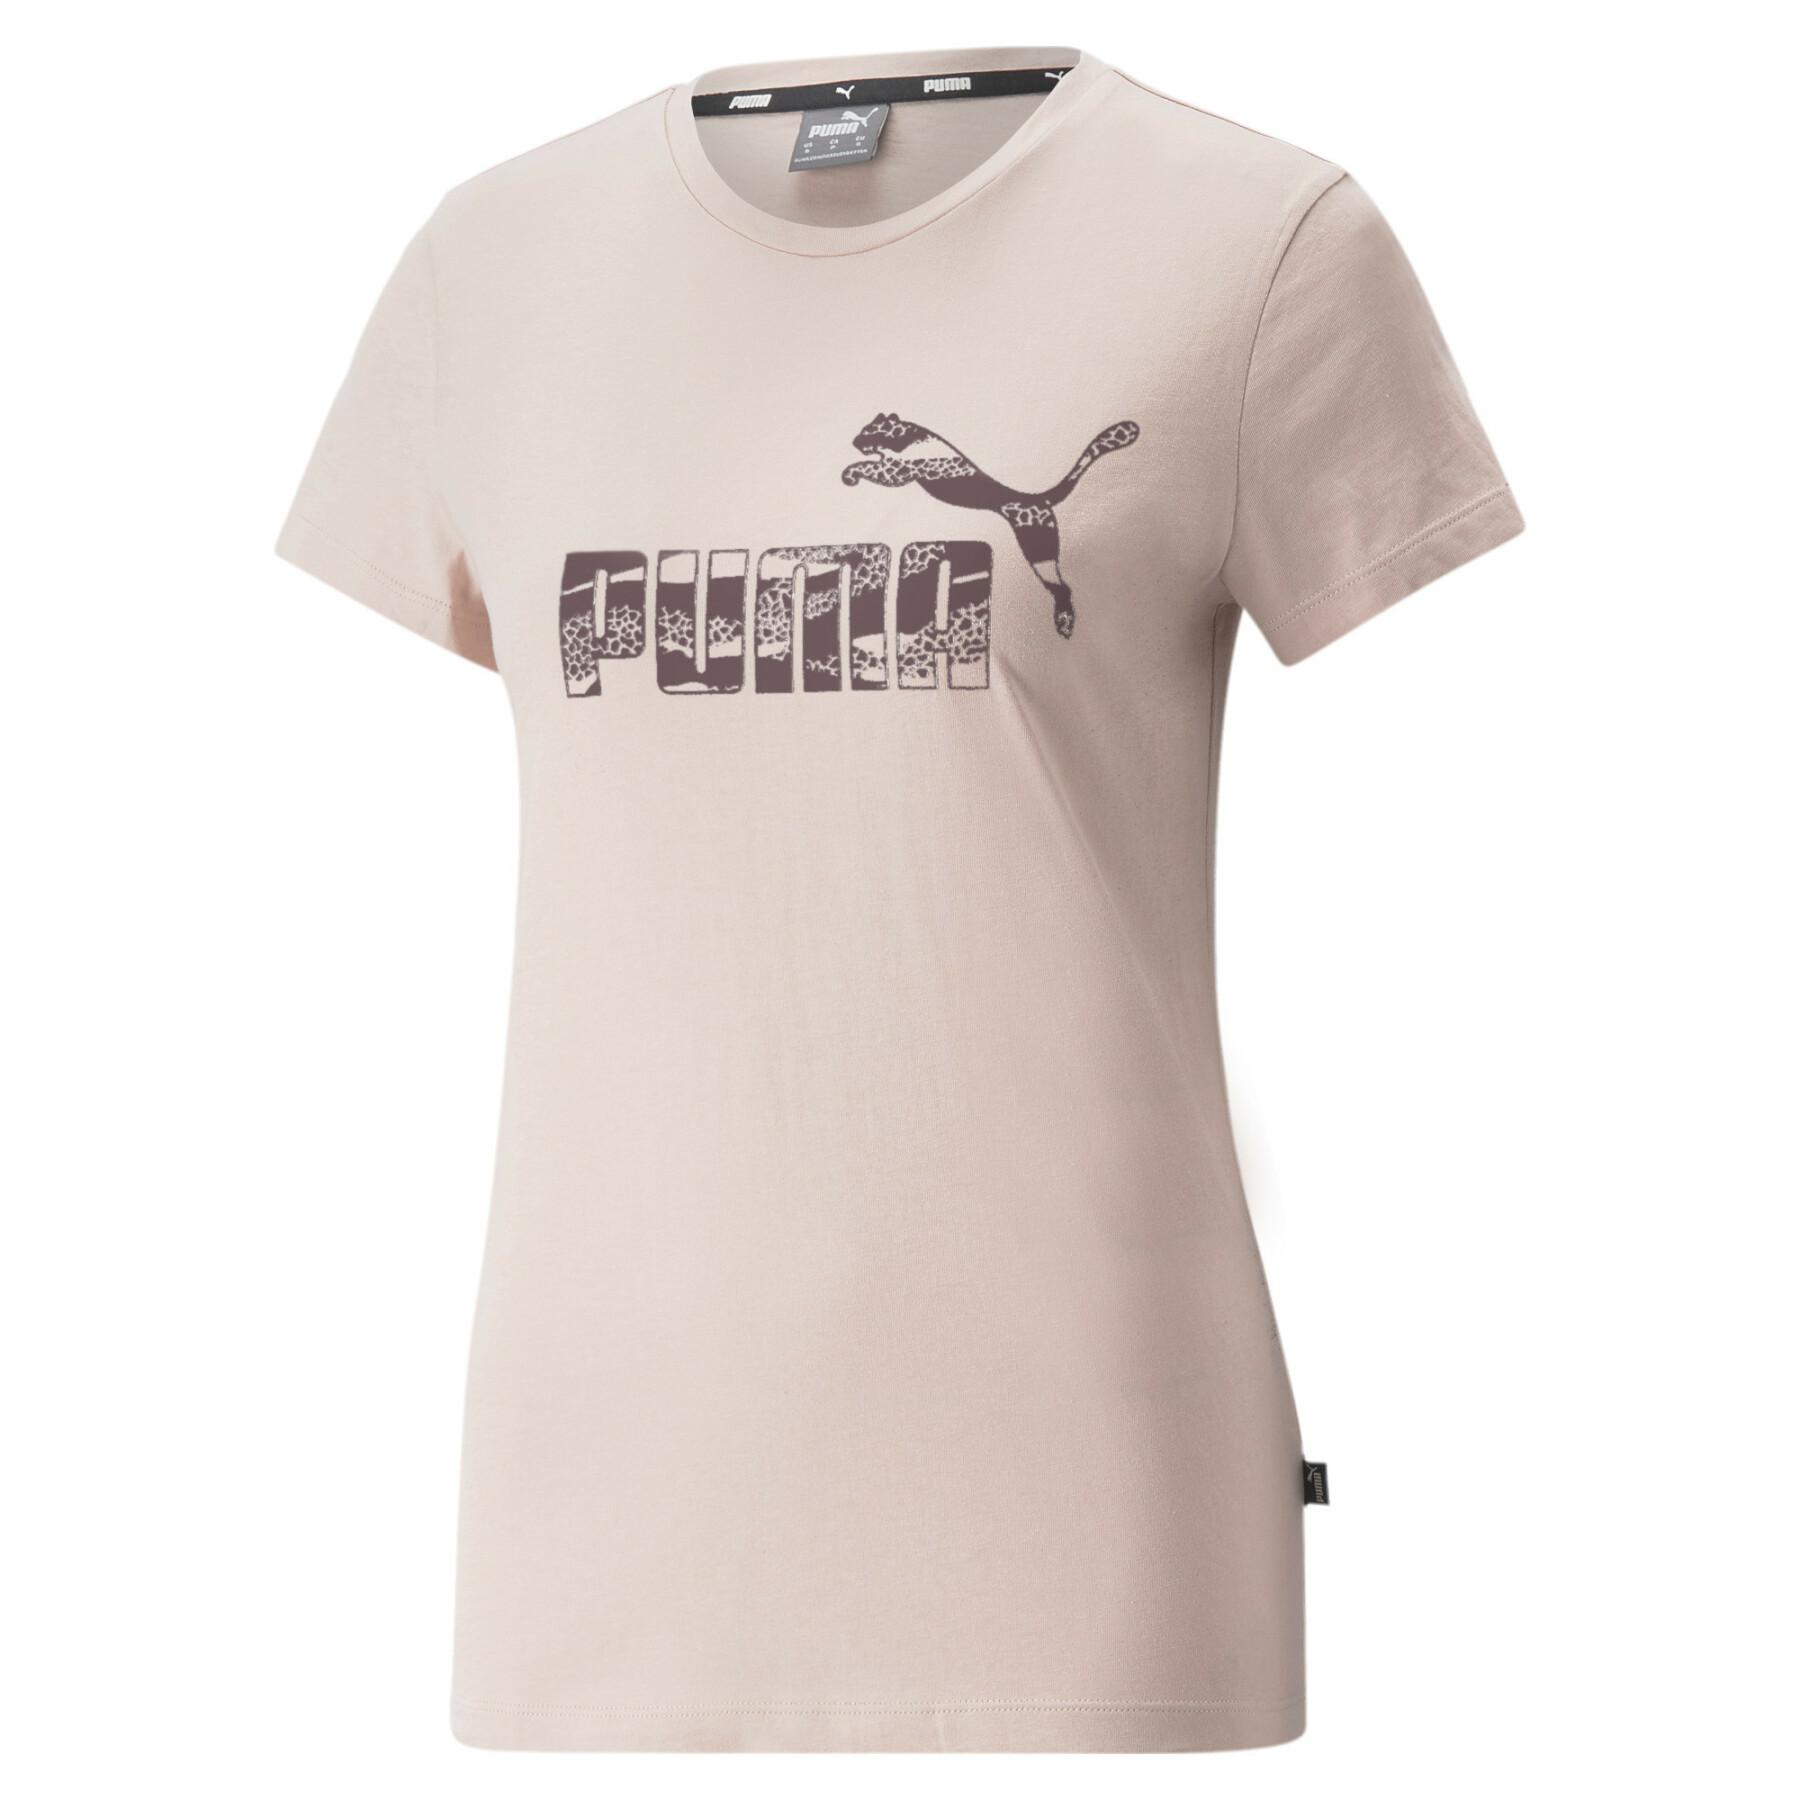 Animal T-shirt - woman - Lifestyle T-shirts Puma ESS+ - Woman Lifestyle